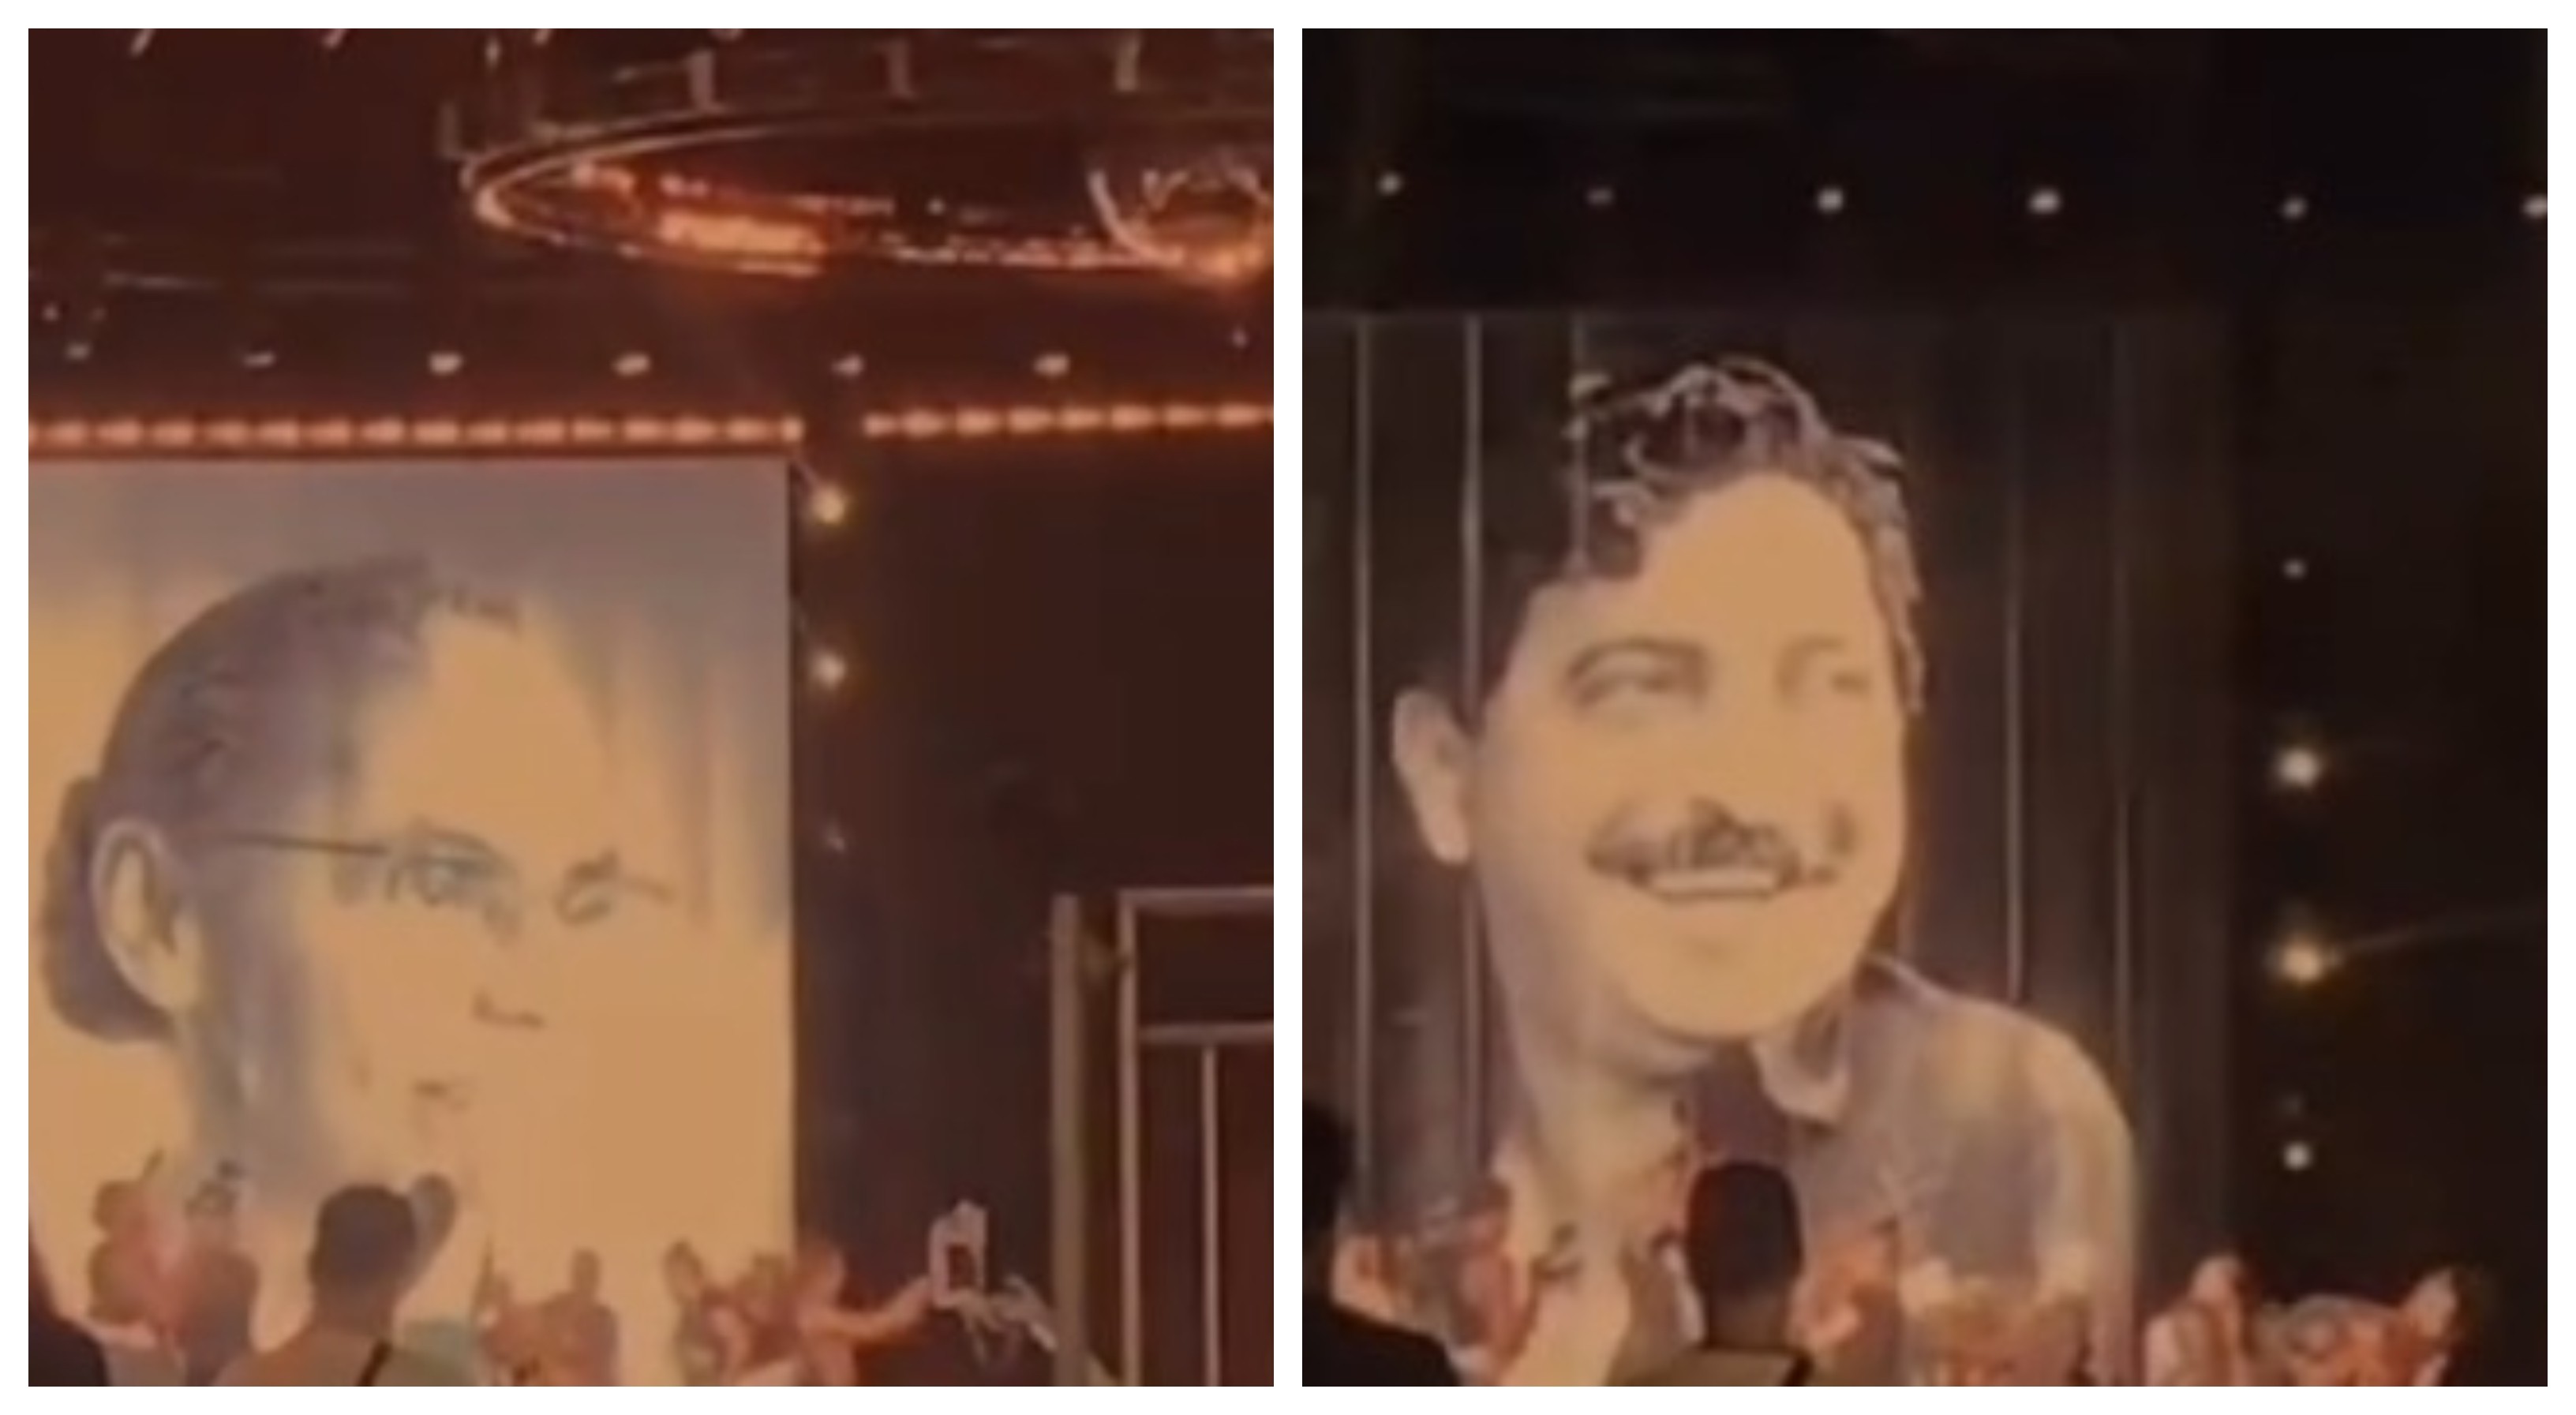 Acreanos Chico Mendes e Marina Silva aparecem em telão durante ensaio do show de Madonna no RJ